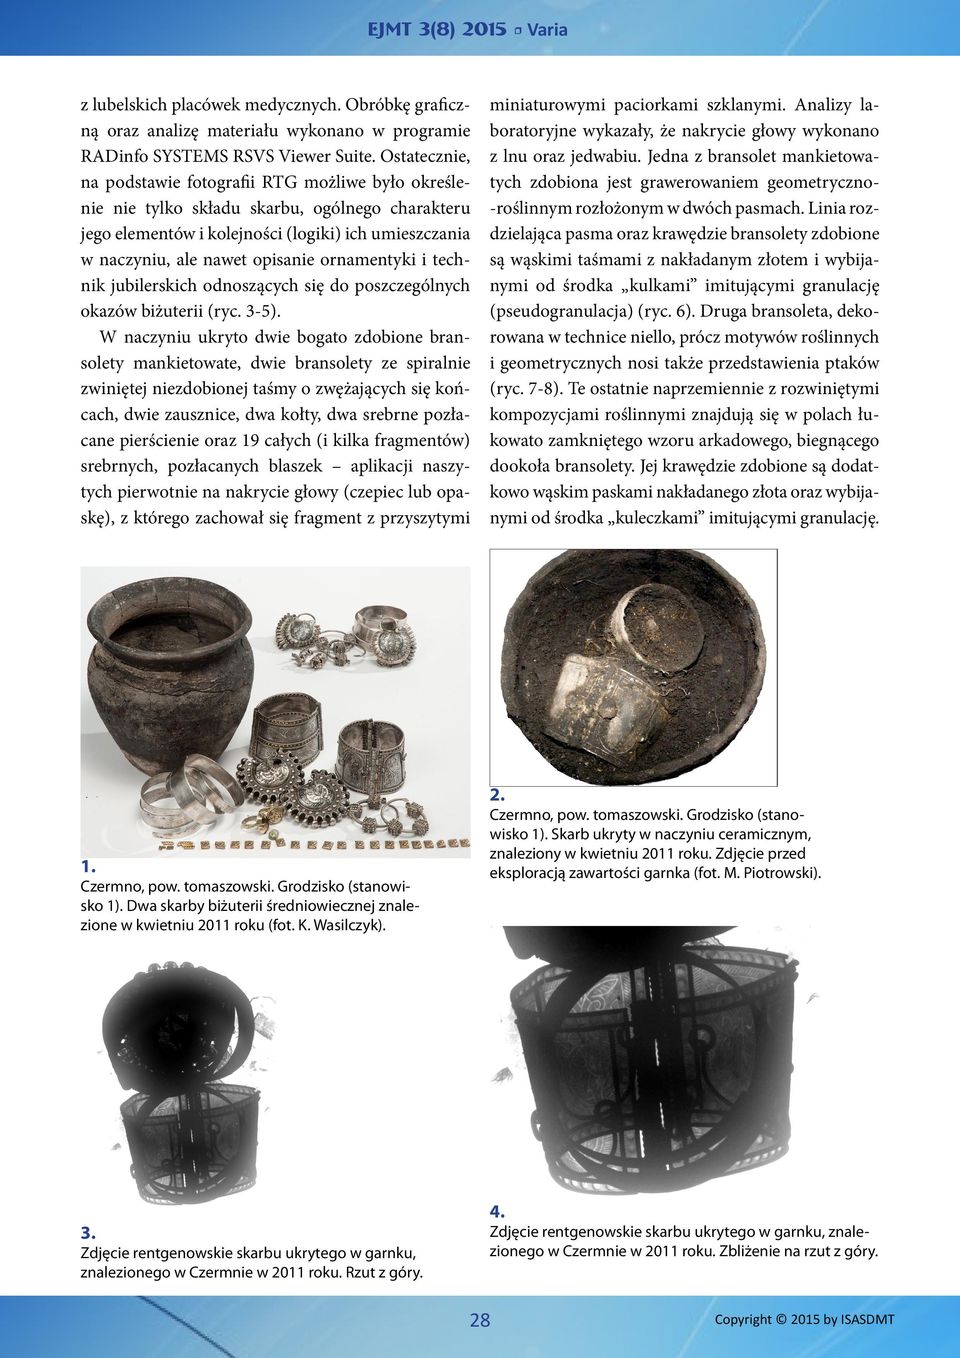 ornamentyki i technik jubilerskich odnoszących się do poszczególnych okazów biżuterii (ryc. 3-5).